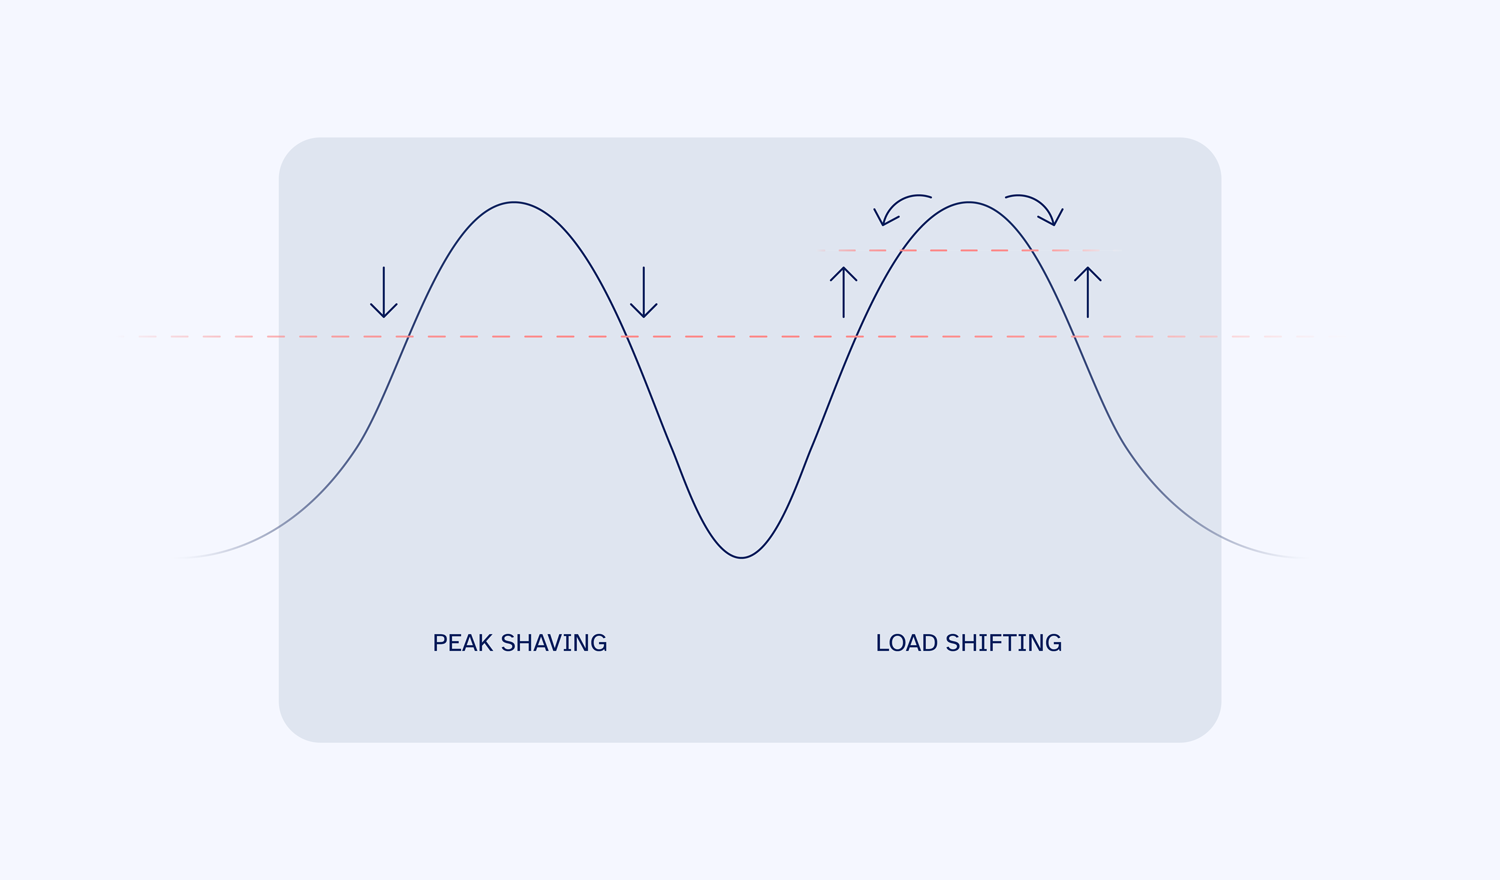 Grafische Darstellung vom Unterschied zw. Peak Shaving und Lastenverschiebung. zwei Graphen nebeneinander. Peak Shaving Graph wird verkleinert, während bei der Lastenschiebeung die Base Line angehoben wird.